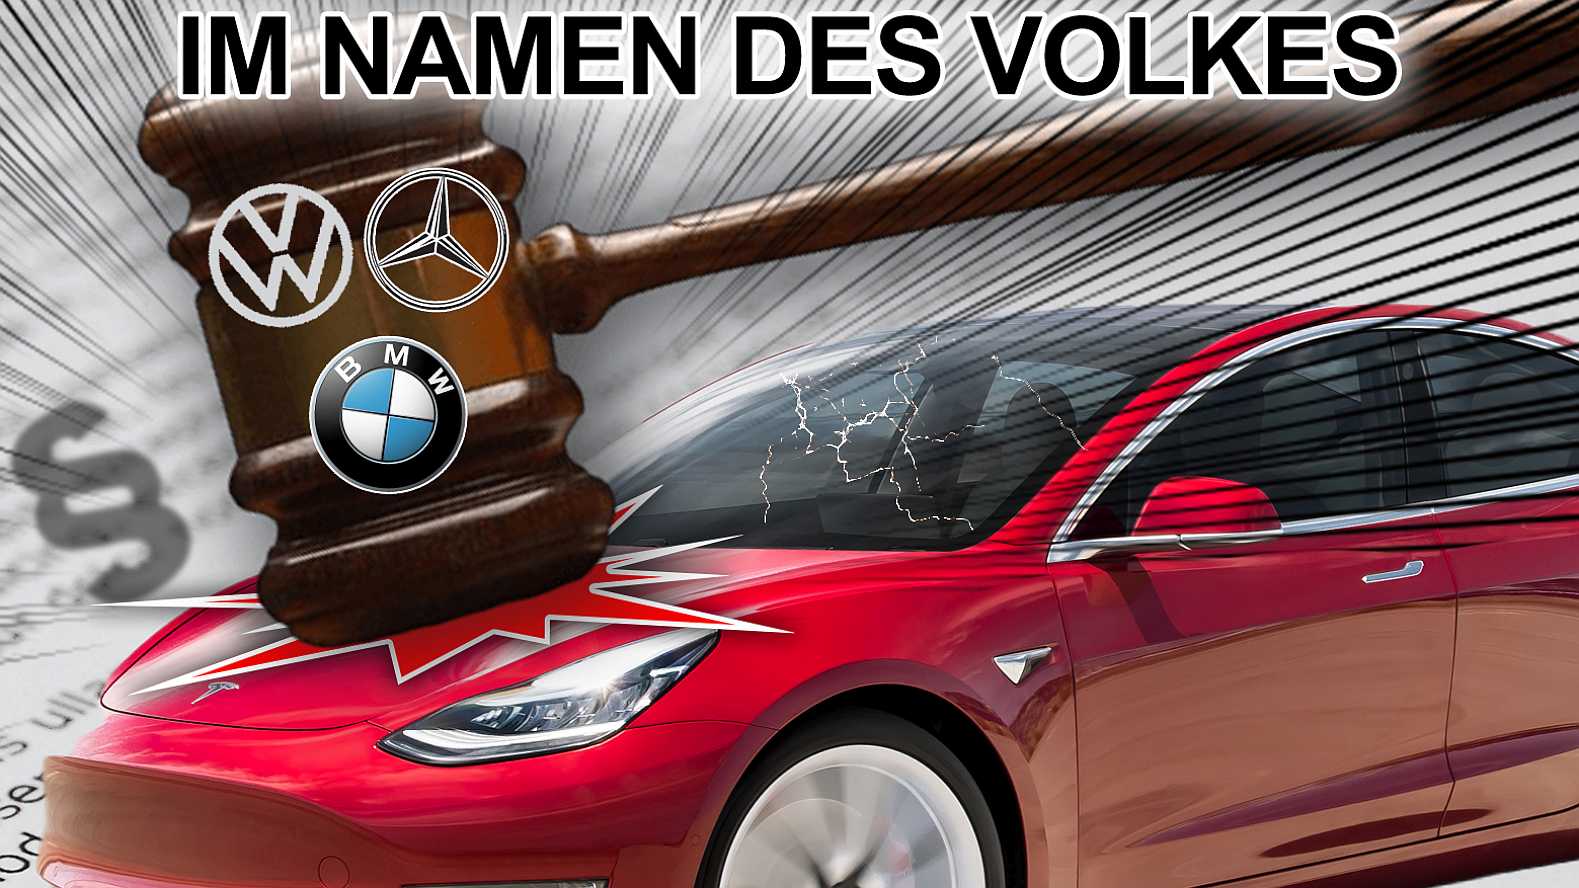 Tesla-Autopilot vor Gericht - im Namen des Volkes - nextnews 113